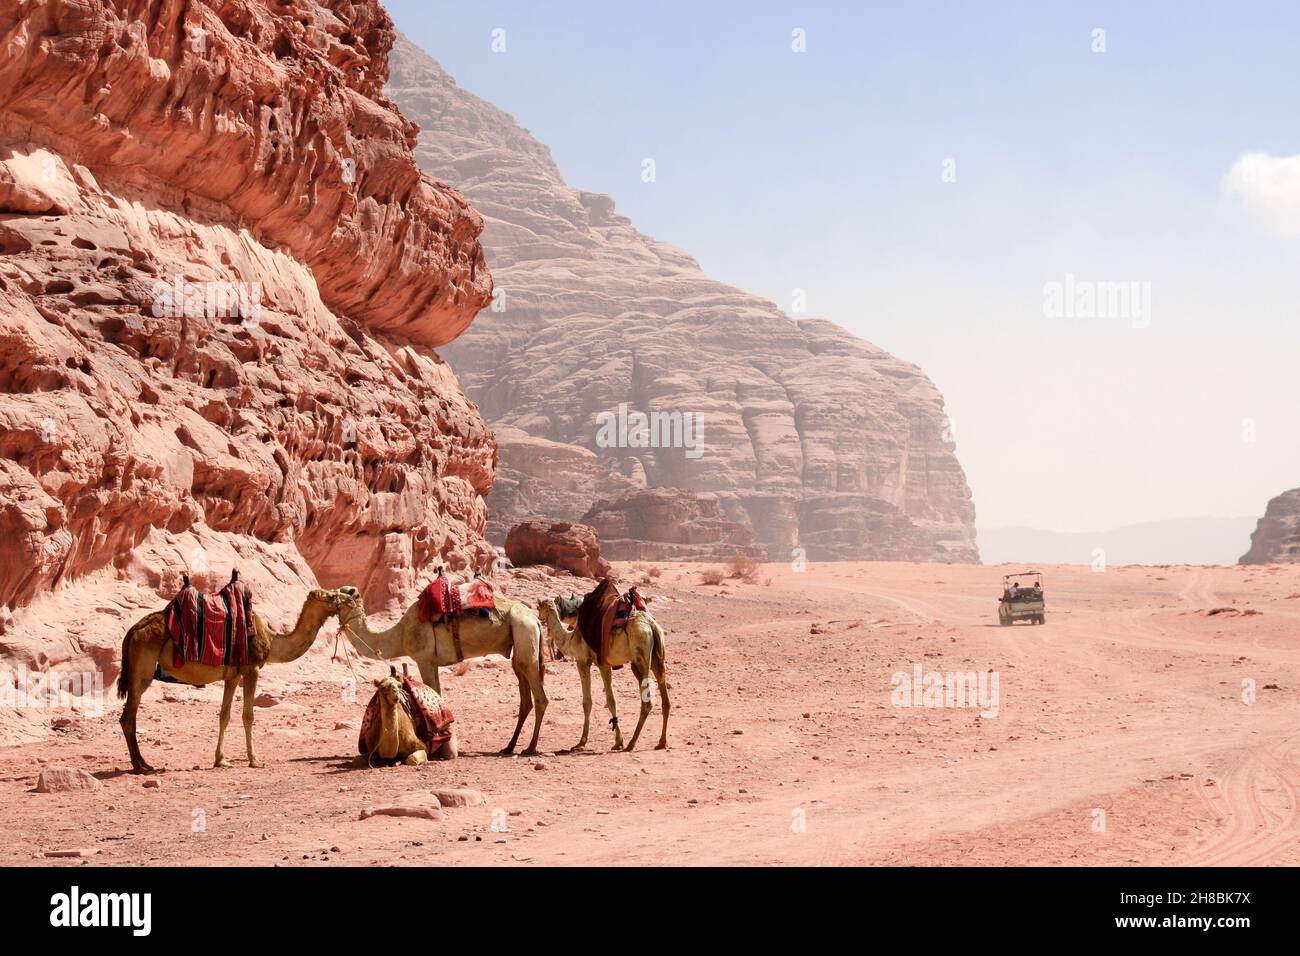 Safari en jeep dans le désert de Wadi Rum, en Jordanie.Les touristes en voiture se rendent sur le sable au milieu des magnifiques rochers tout-terrain.Paysage désertique avec quatre chameaux, San rouge Banque D'Images